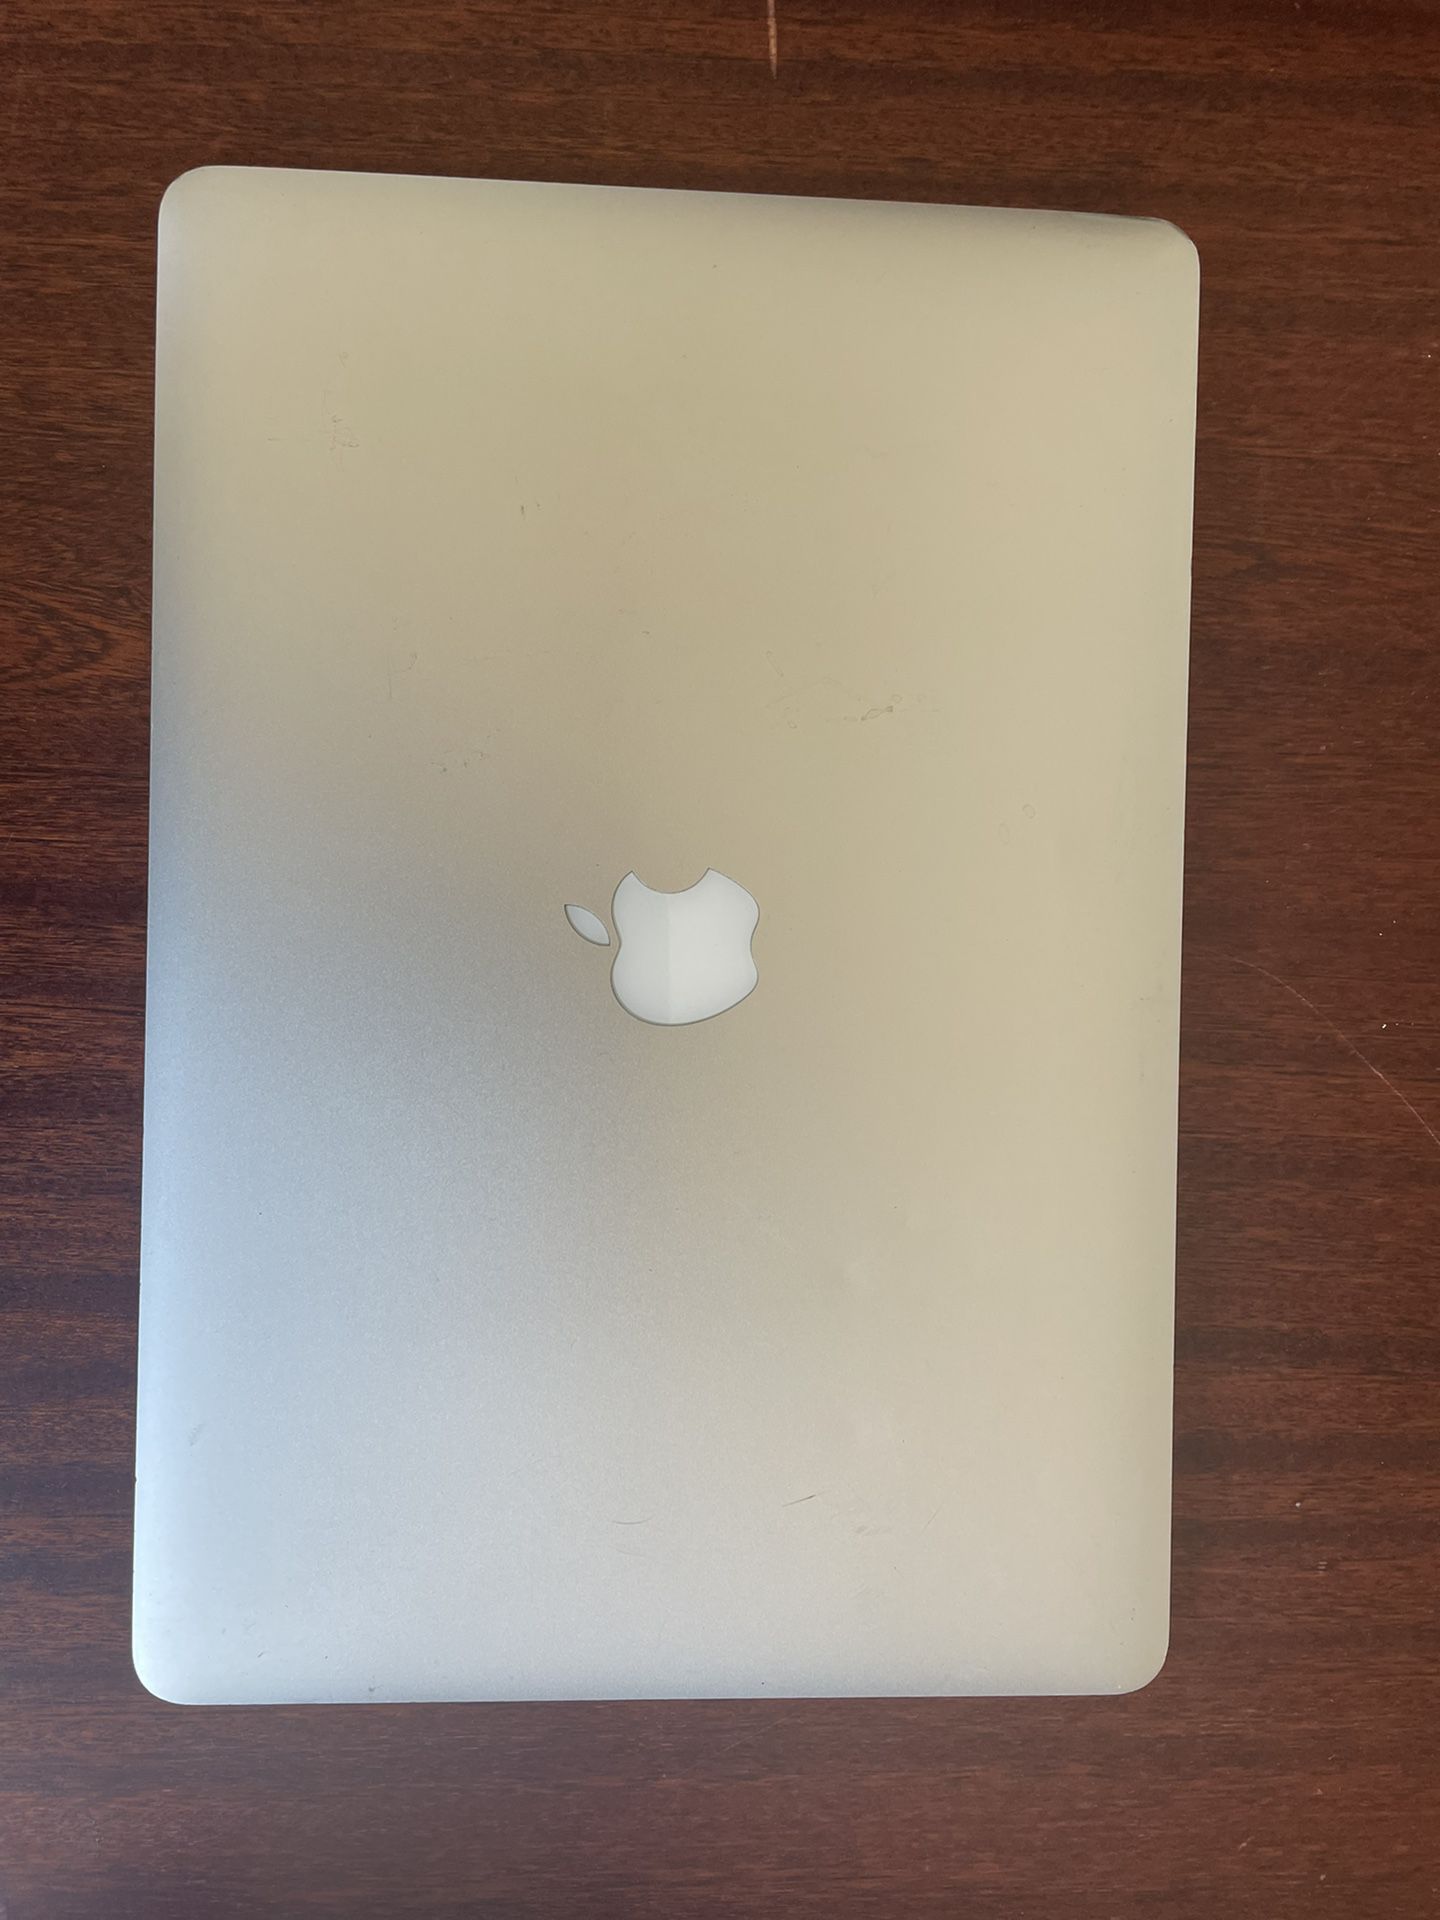 2014 MacBook Pro 15 Inch